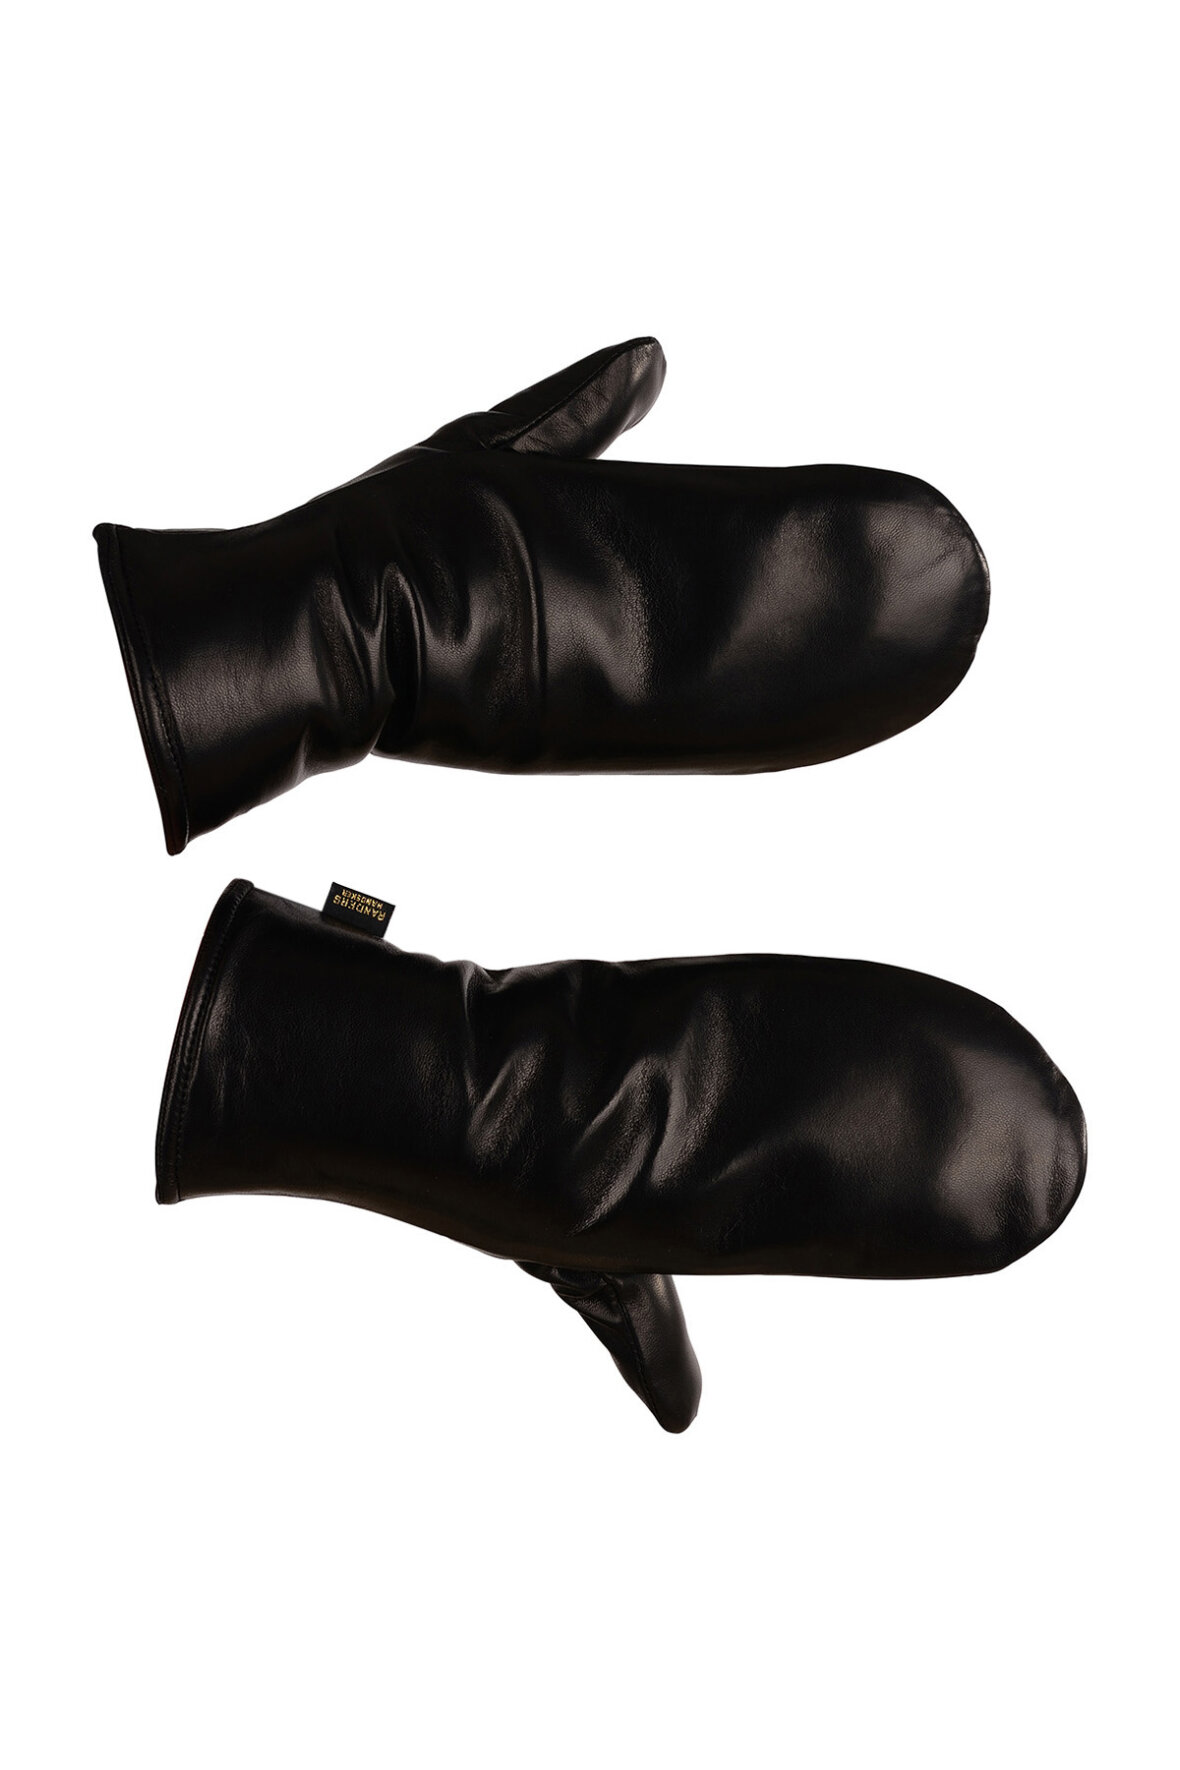 Tentacle tigger Australien Randers Handsker sorte luffer i exquisit kvalitet til damer - Hos Lohse